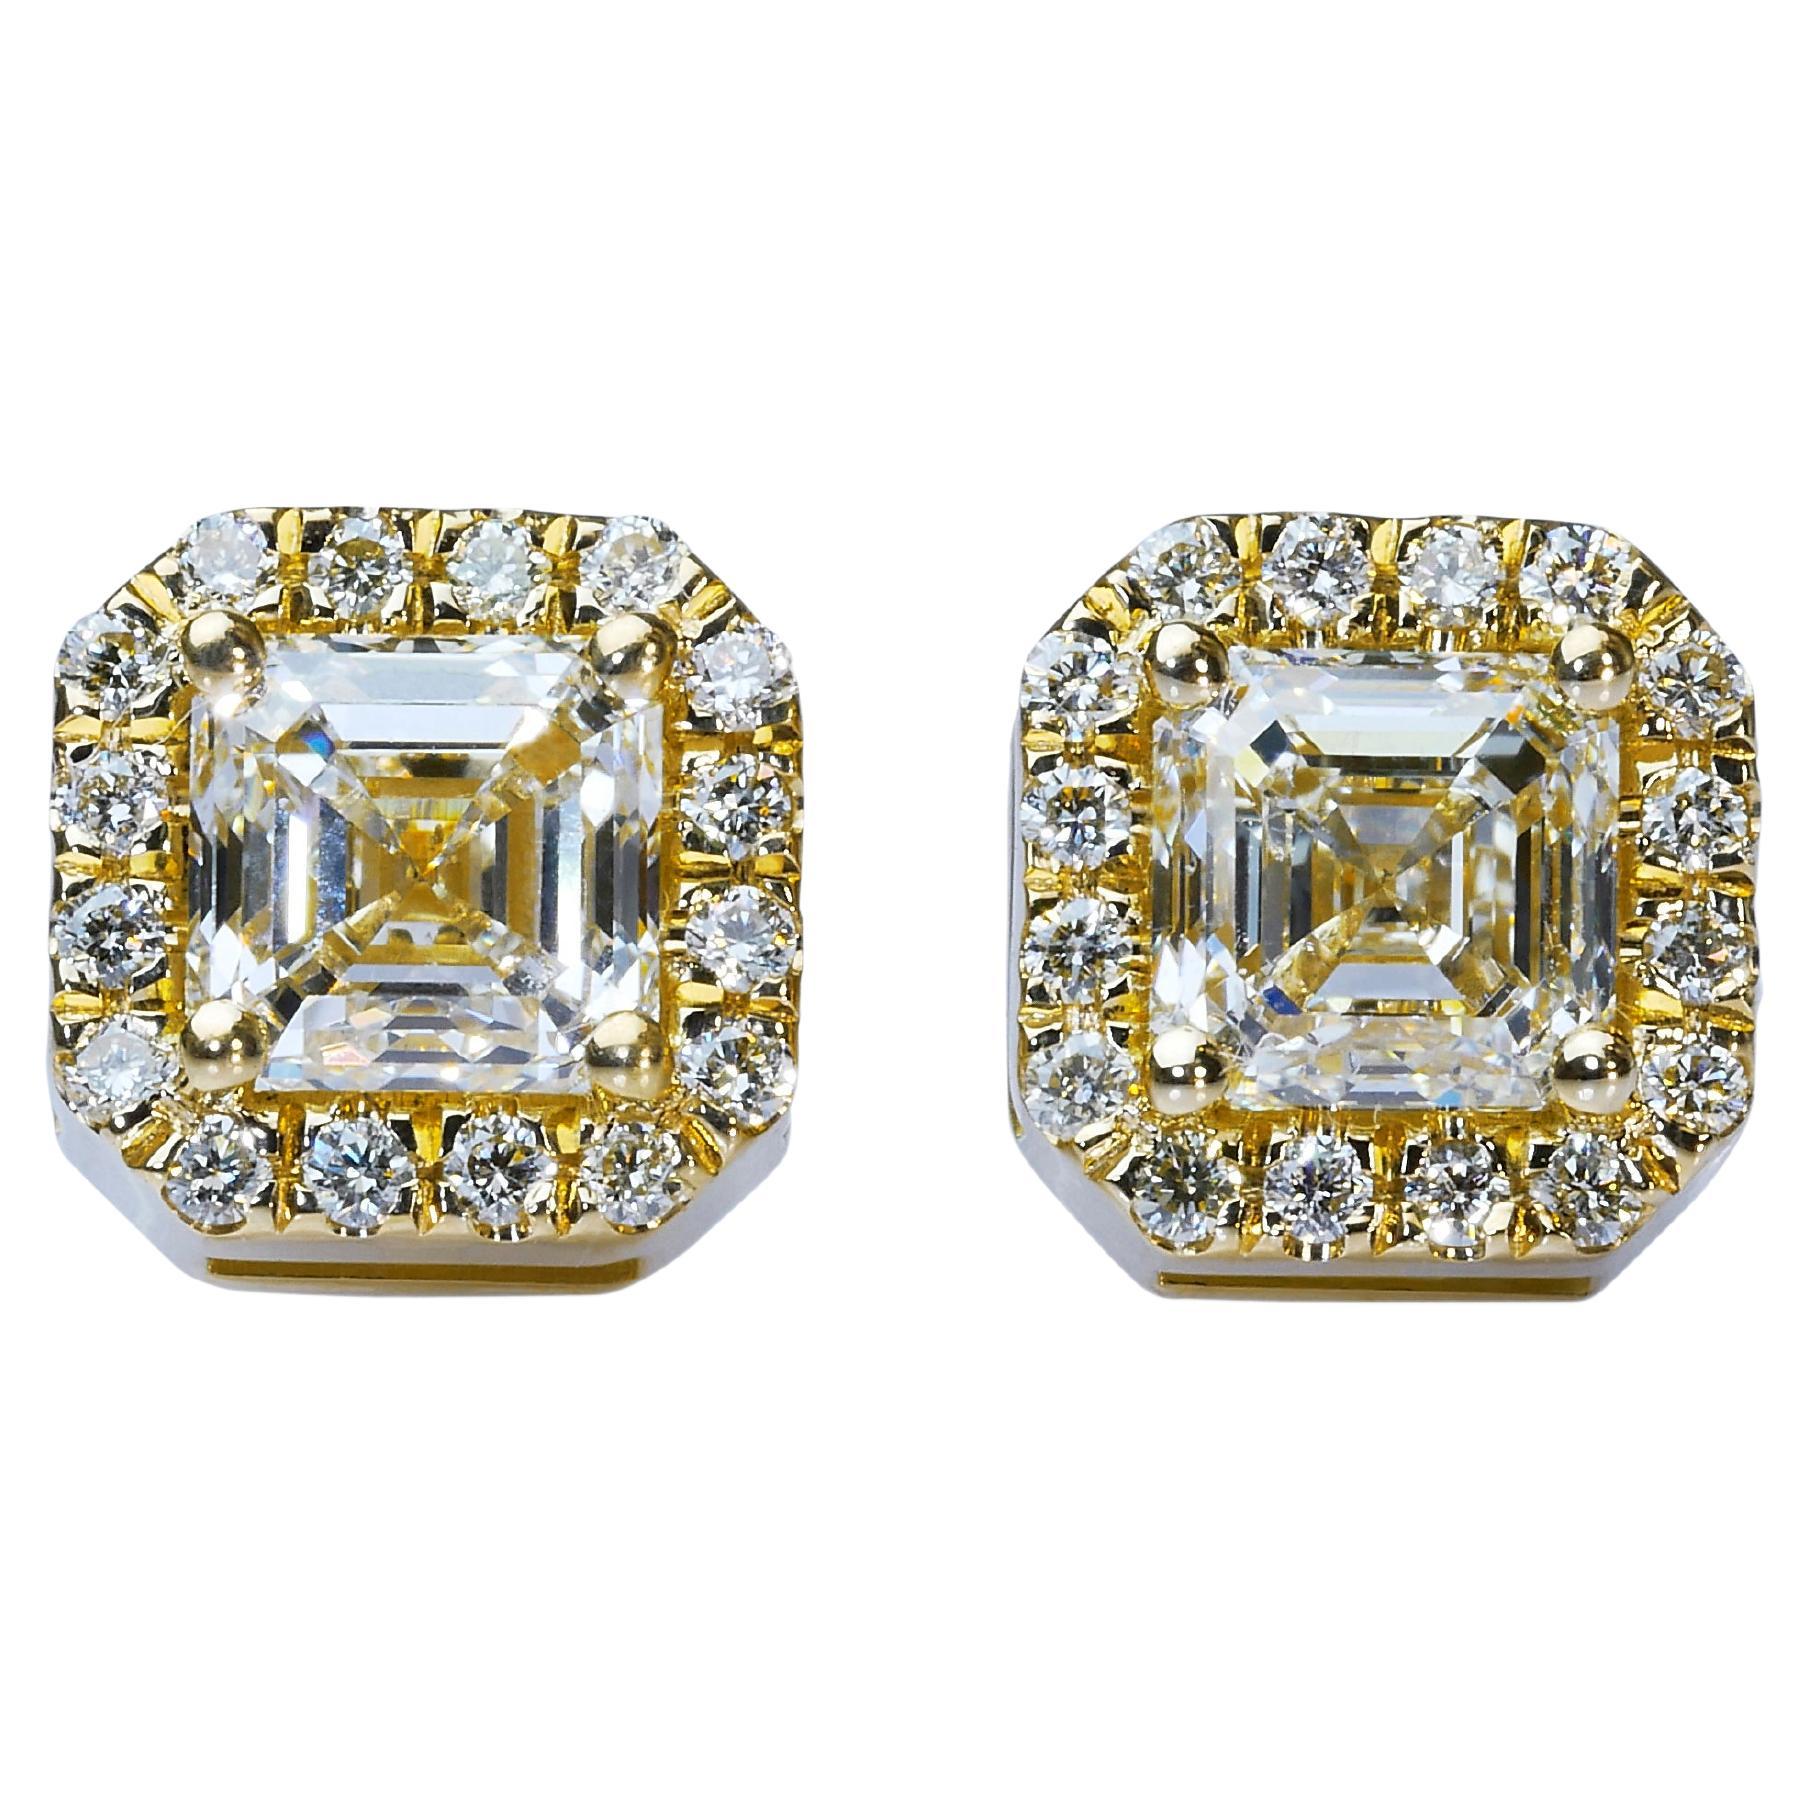 Prächtige 1,74 Karat Diamant-Ohrstecker aus 18 Karat Gelbgold - GIA zertifiziert 